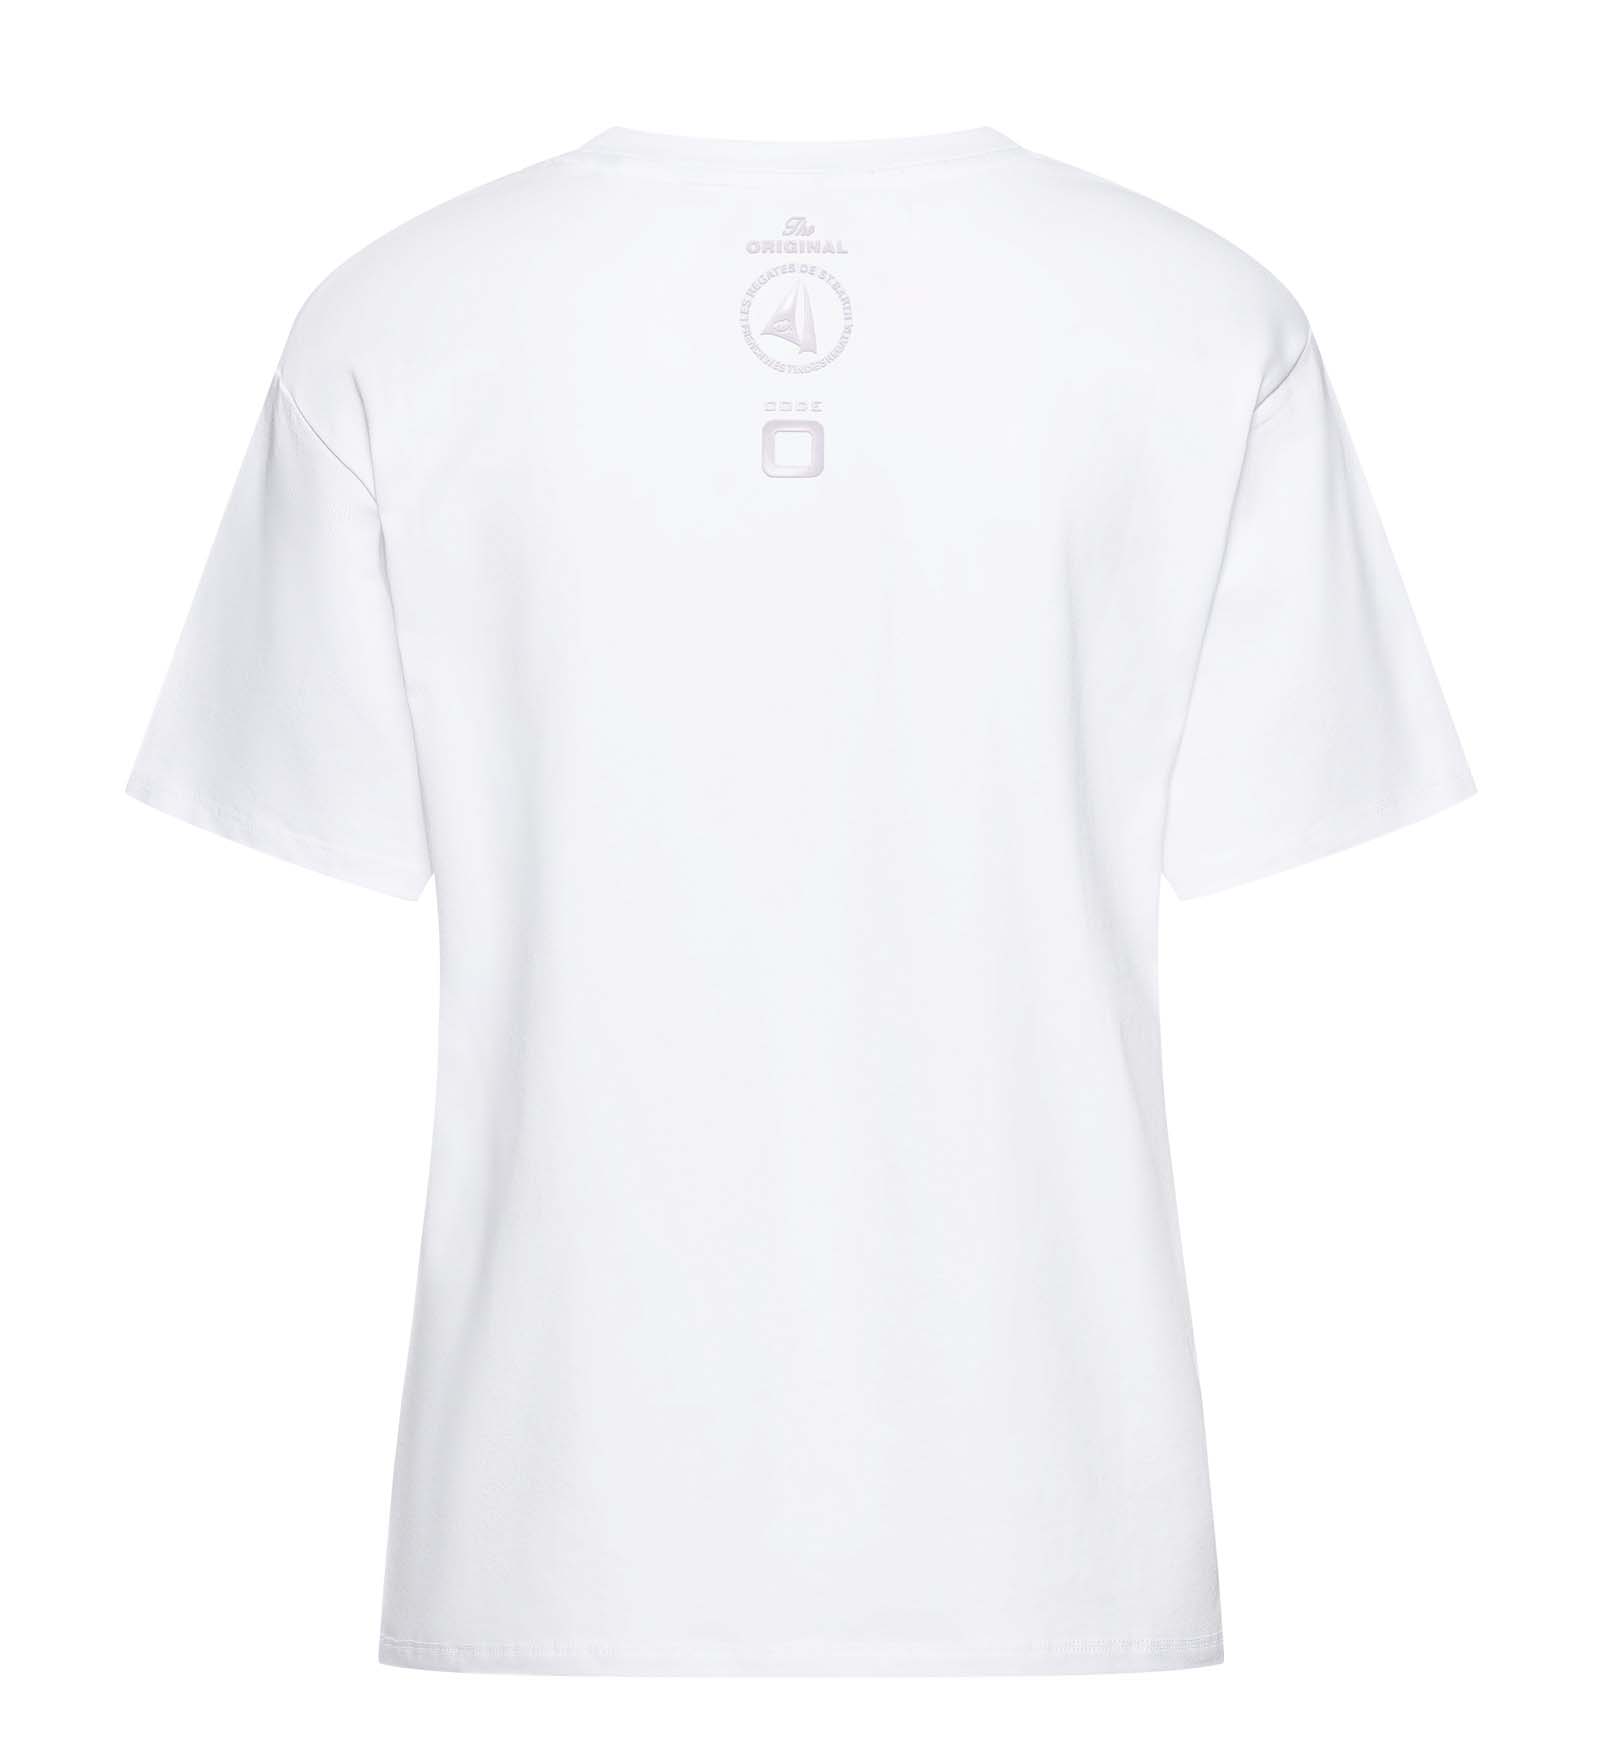 T-shirt Wit voor Dames 